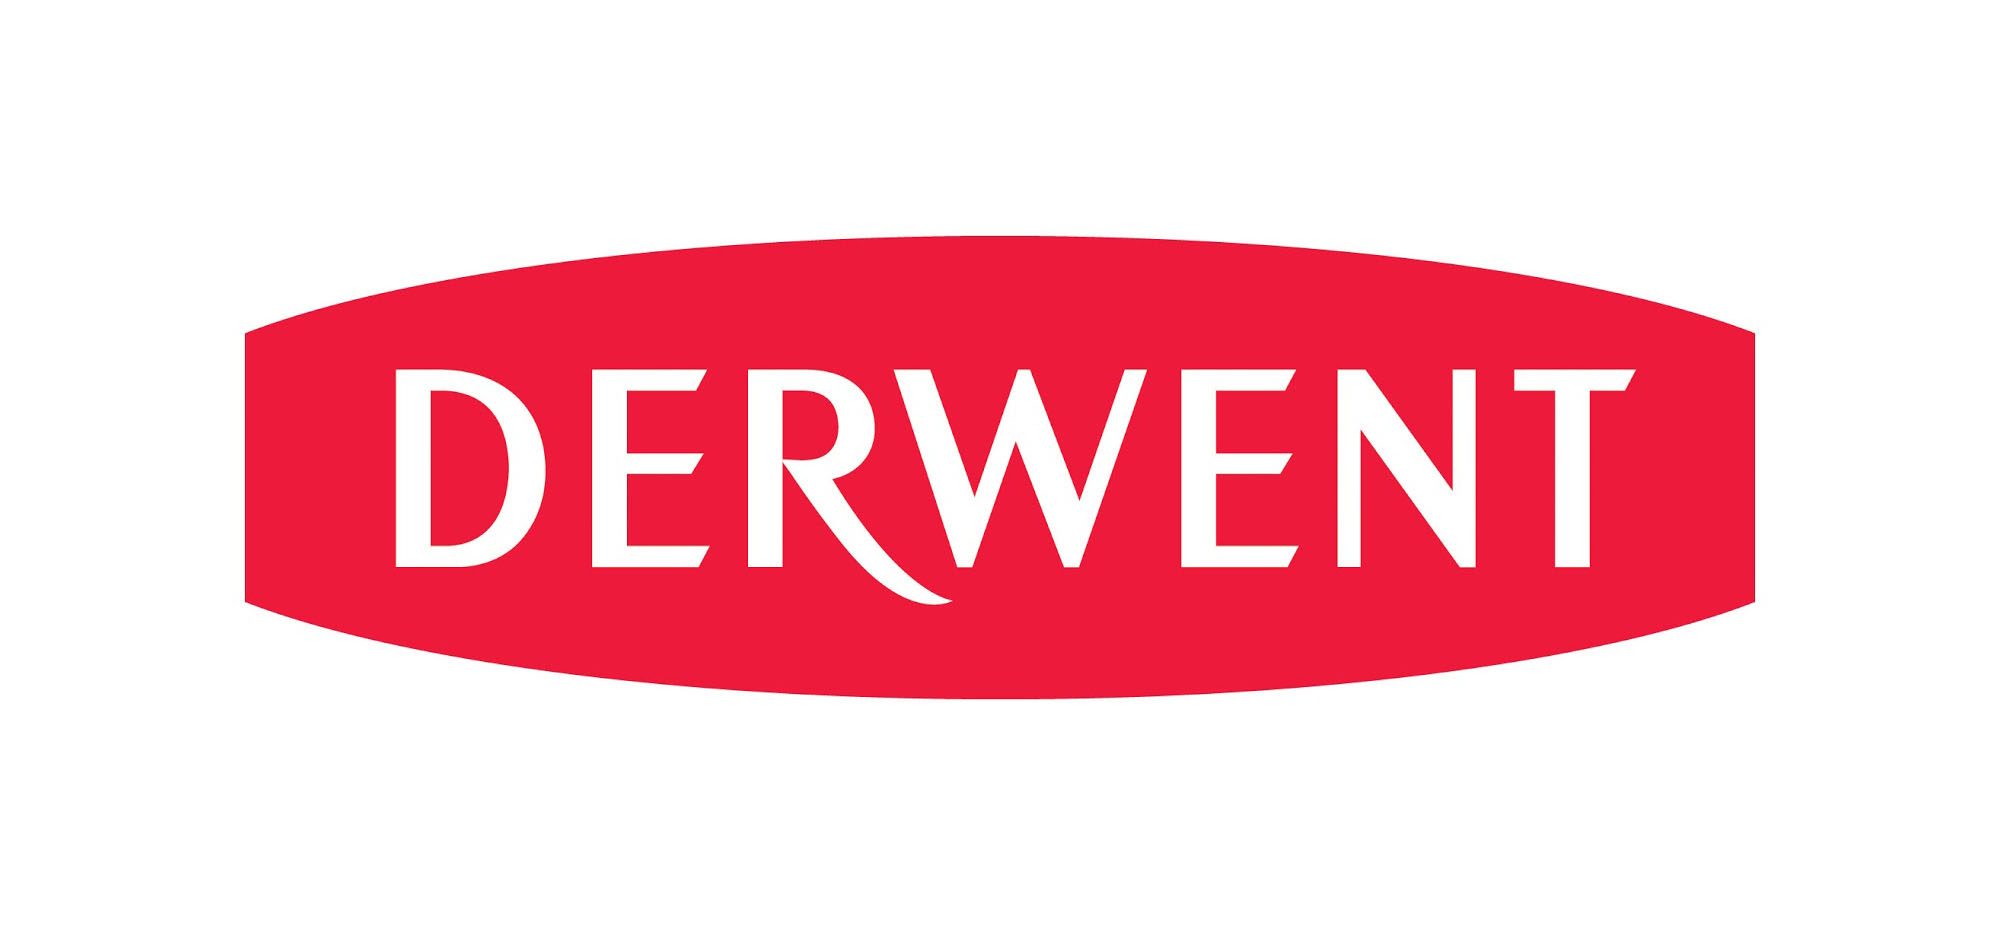 File:Derwent brand logo.svg - Wikipedia